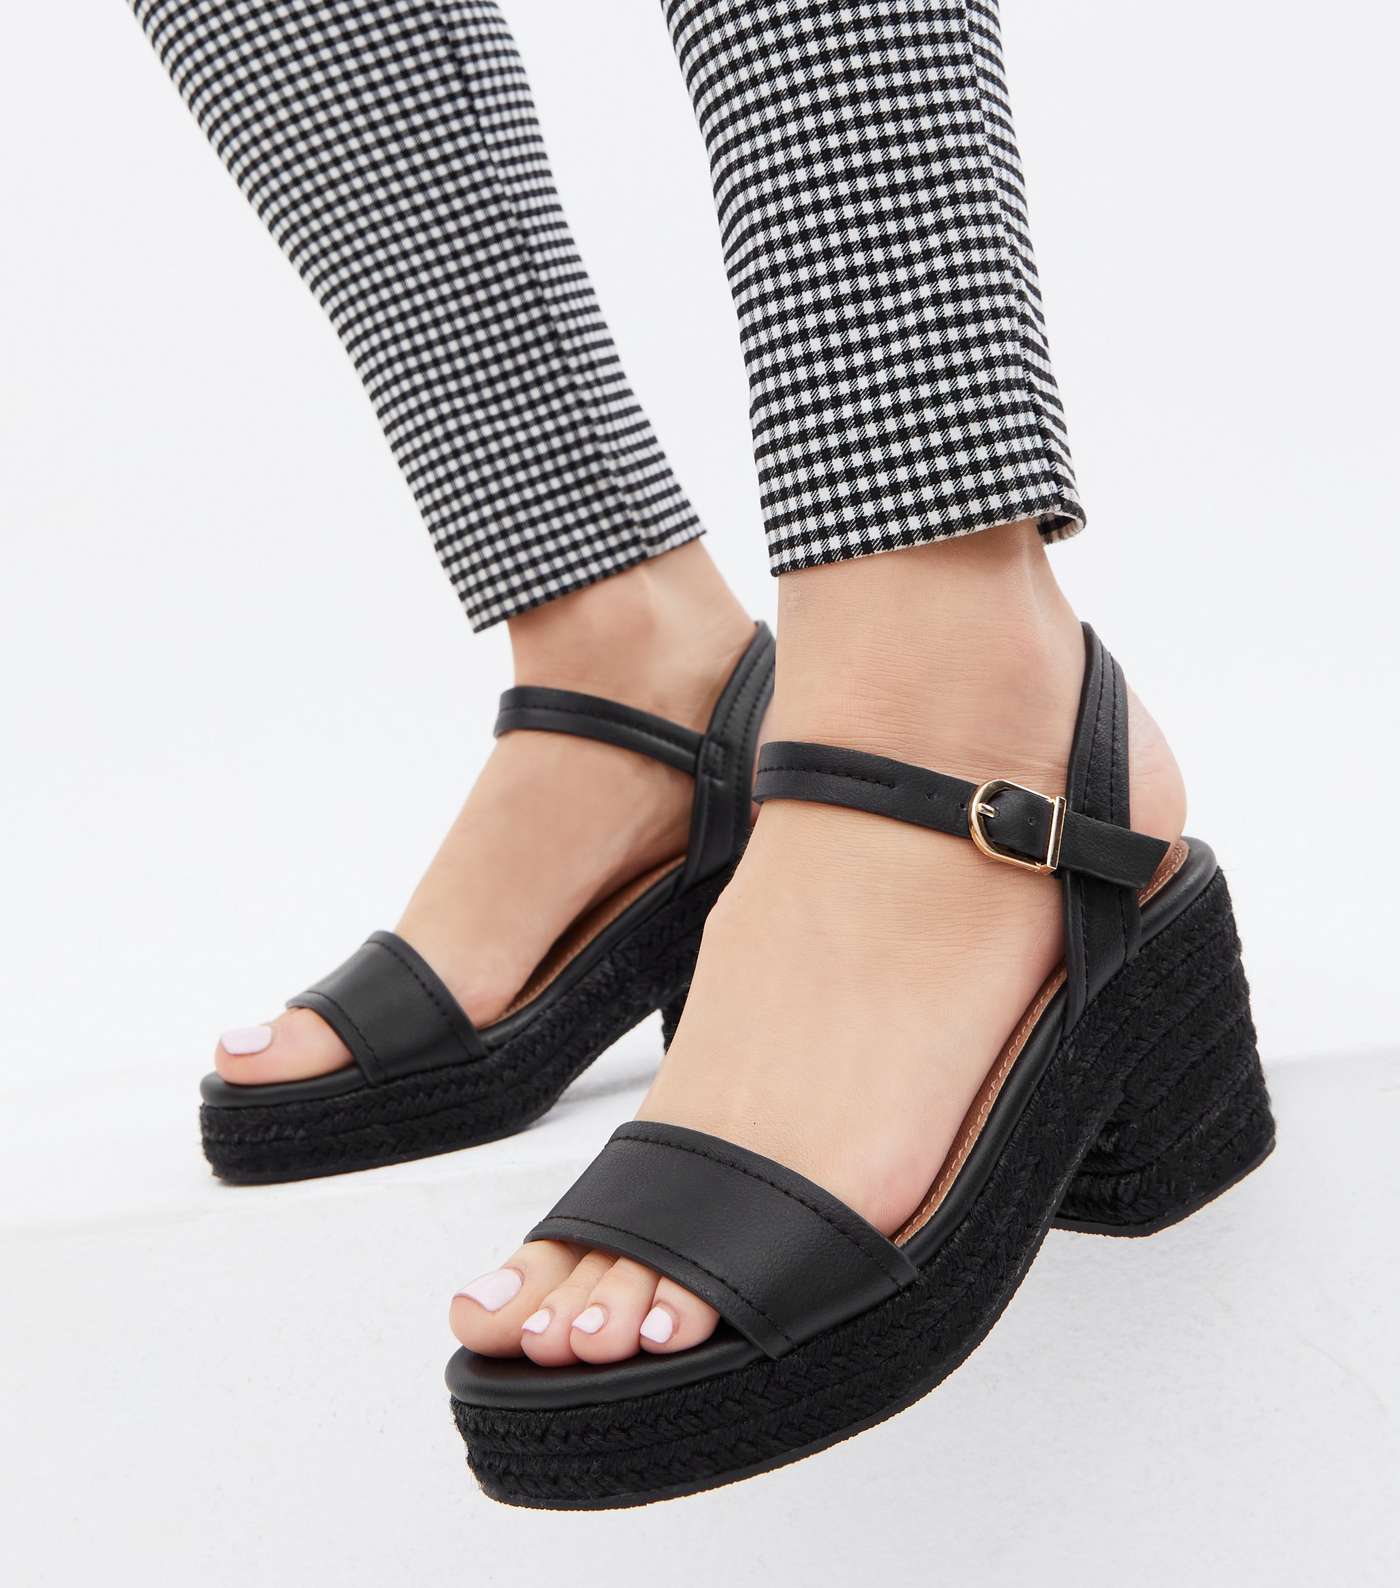 Wide Fit Black Espadrille Block Heel Platform Sandals Image 2